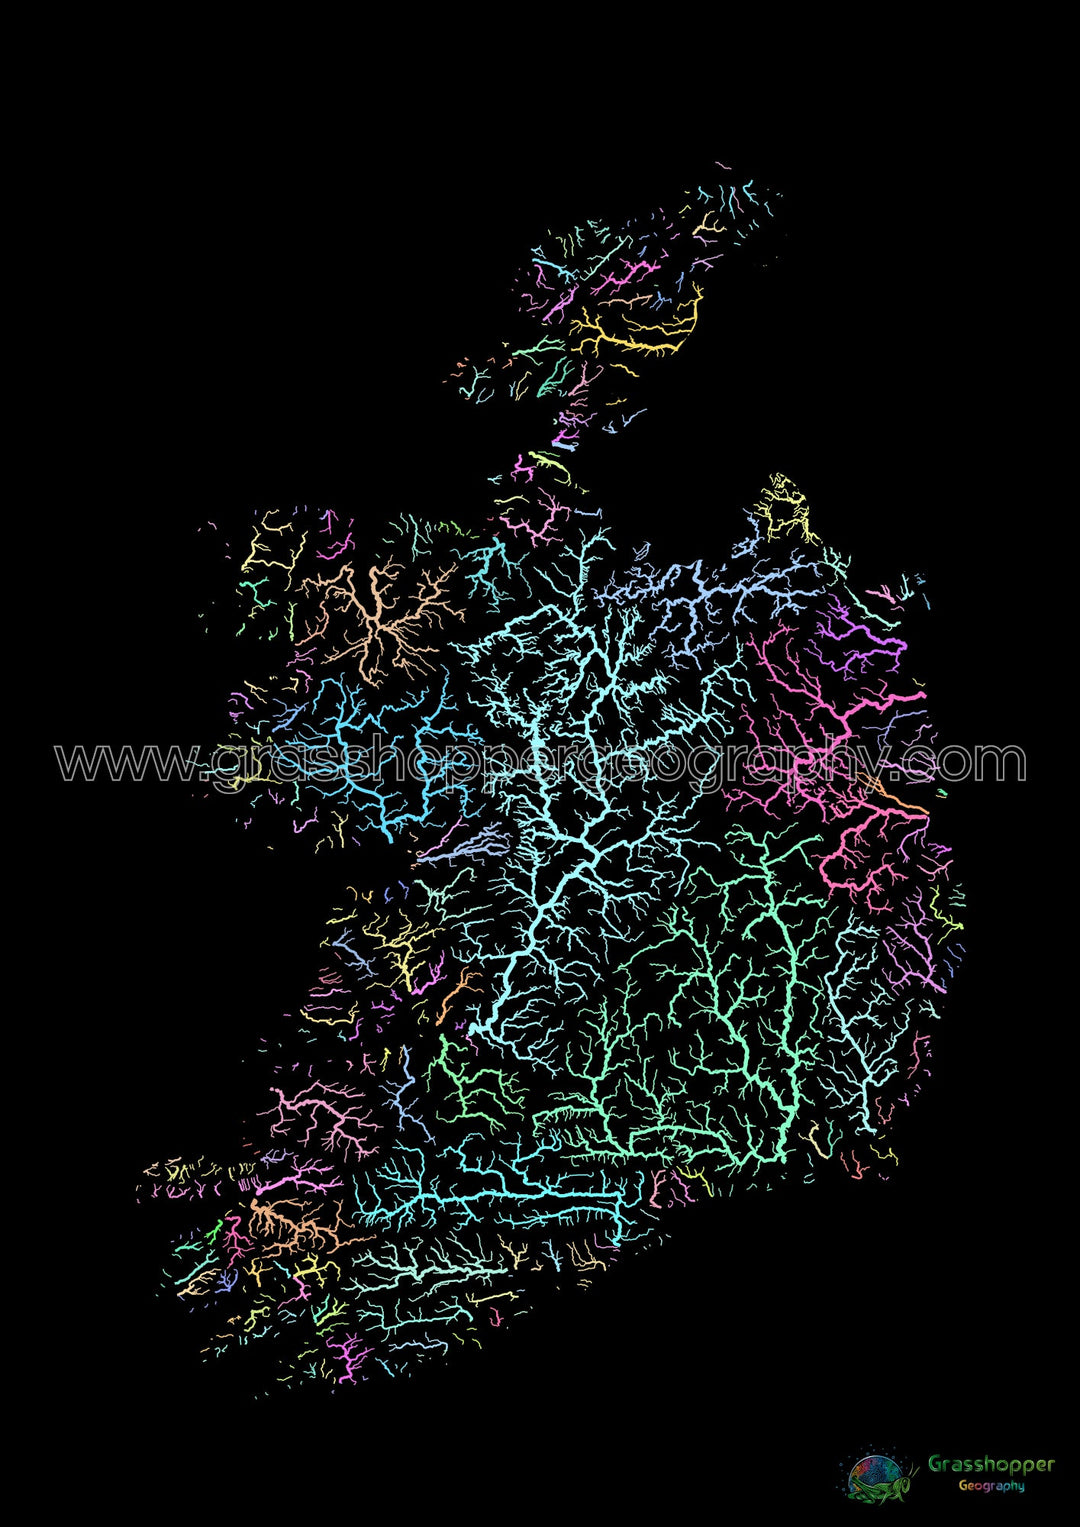 Irlande - Carte des bassins fluviaux, pastel sur noir - Fine Art Print